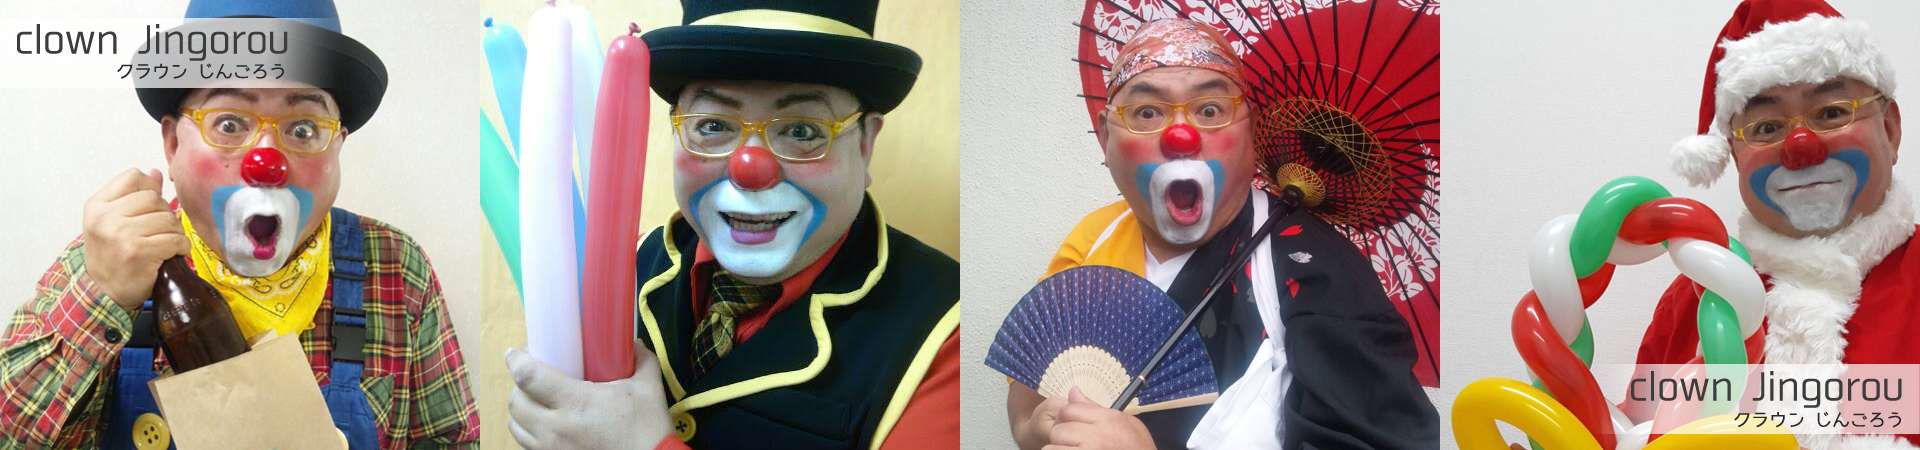 clown-jingorou-TOP